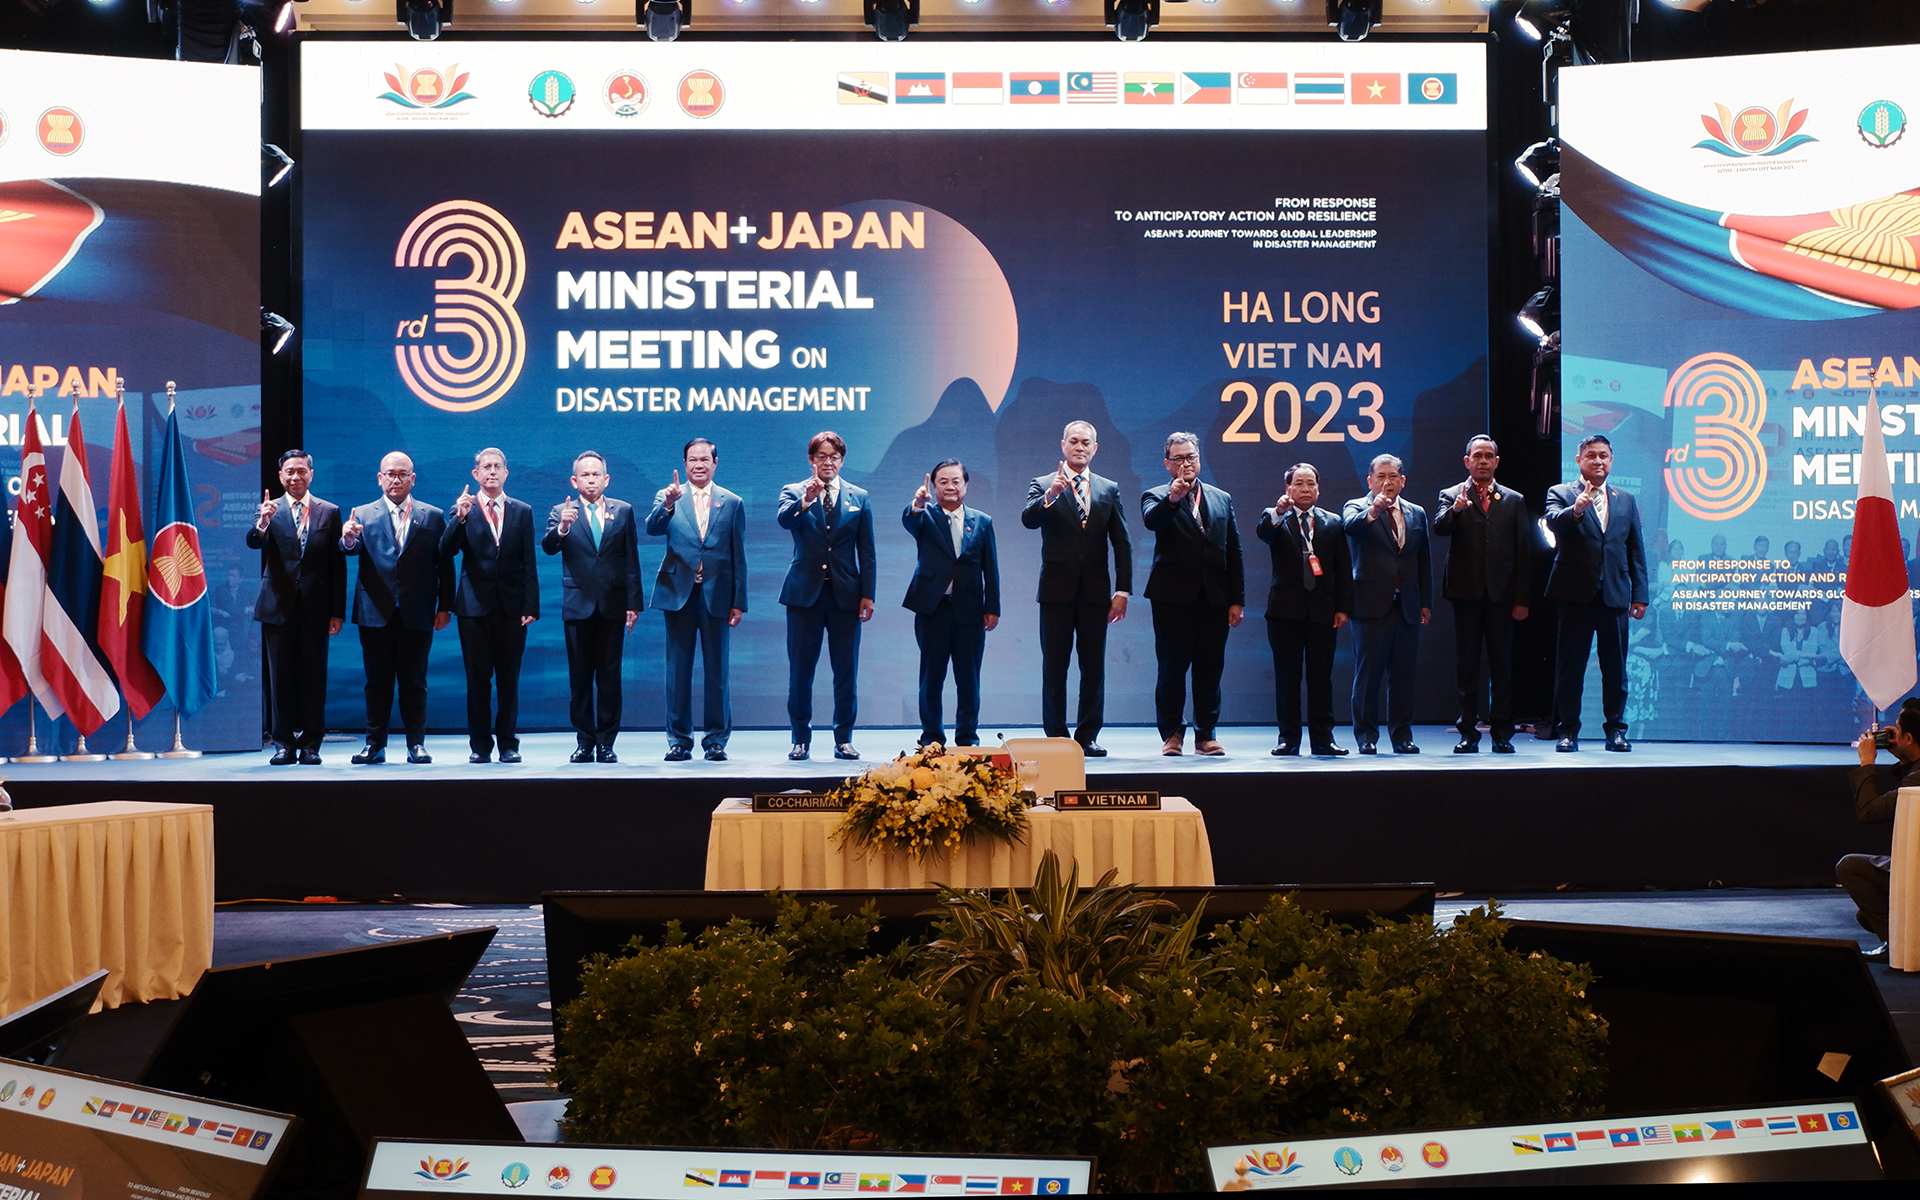 Lãnh đạo các quốc gia ASEAN và Nhật Bản quyết tâm thực hiện mục tiêu 'Một ASEAN - Một ứng phó'. Ảnh: Bảo Thắng.